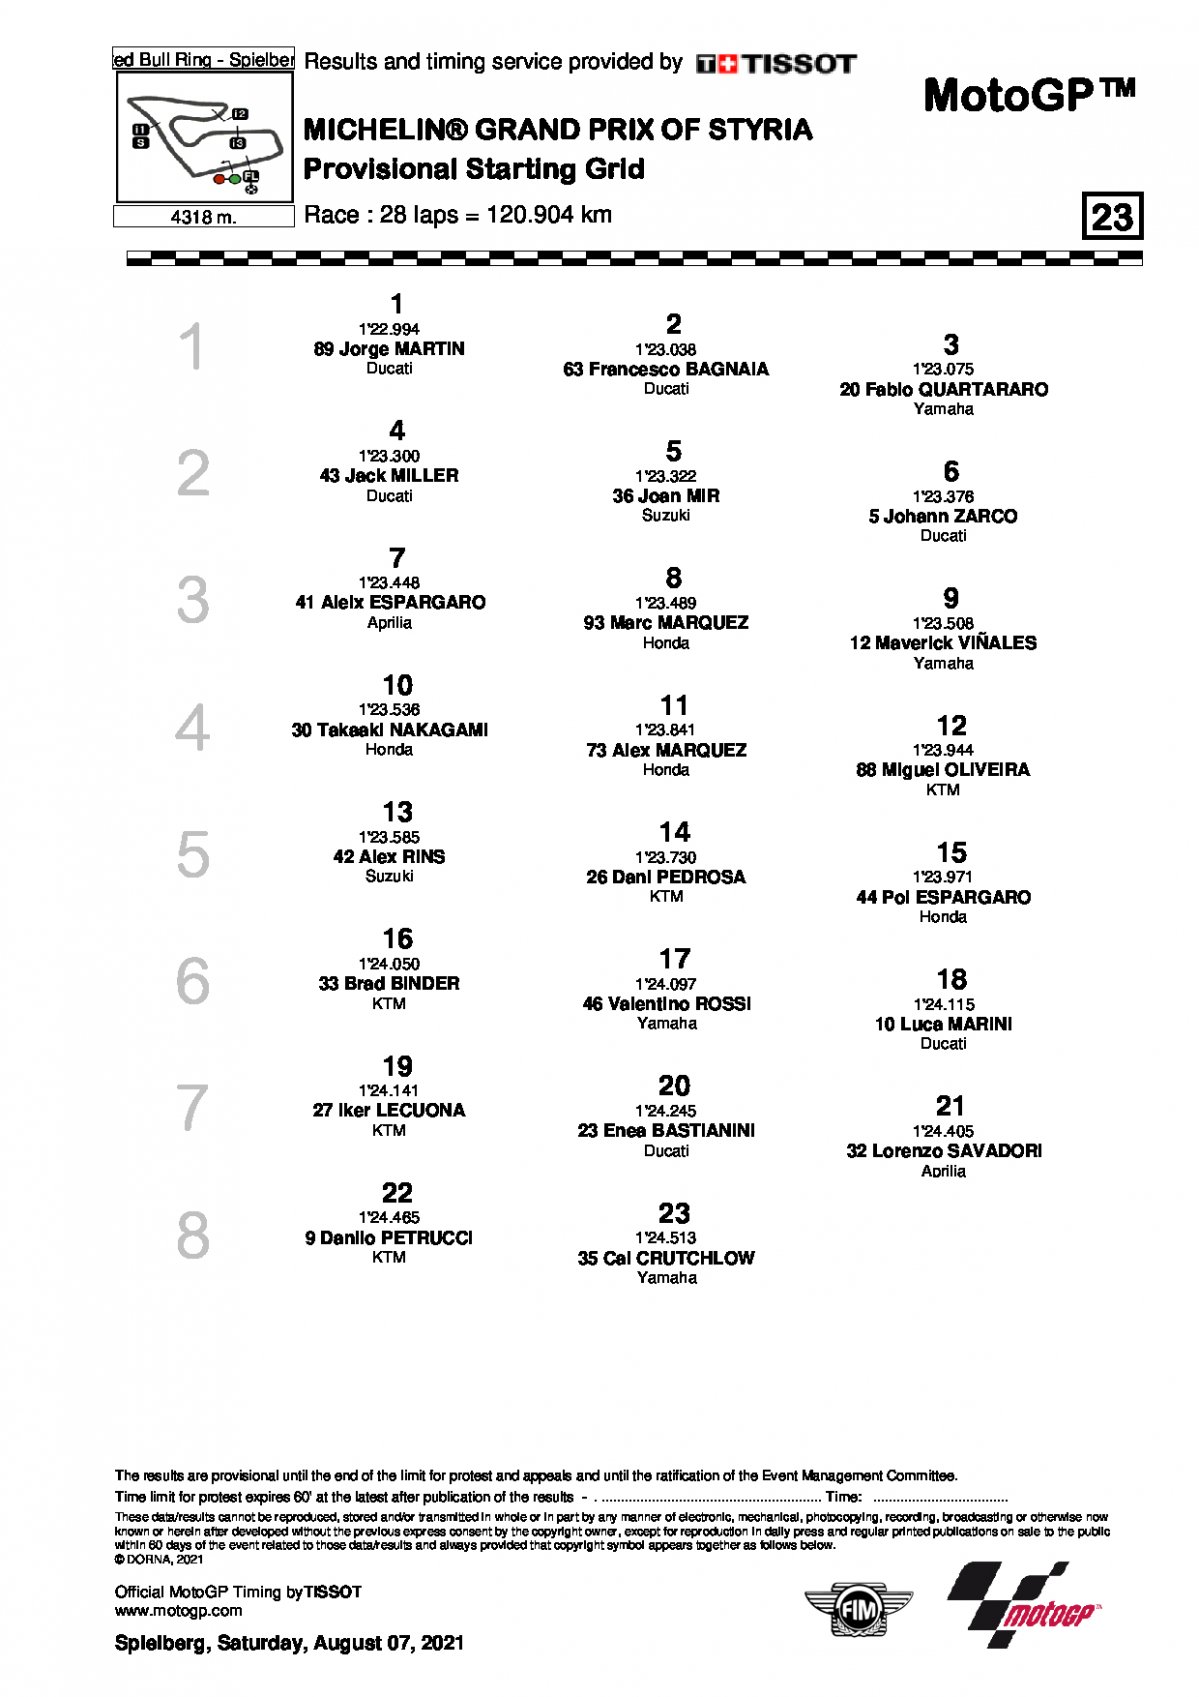 Стартовая решетка Гран-При Штирии, MotoGP (8/08/2021)